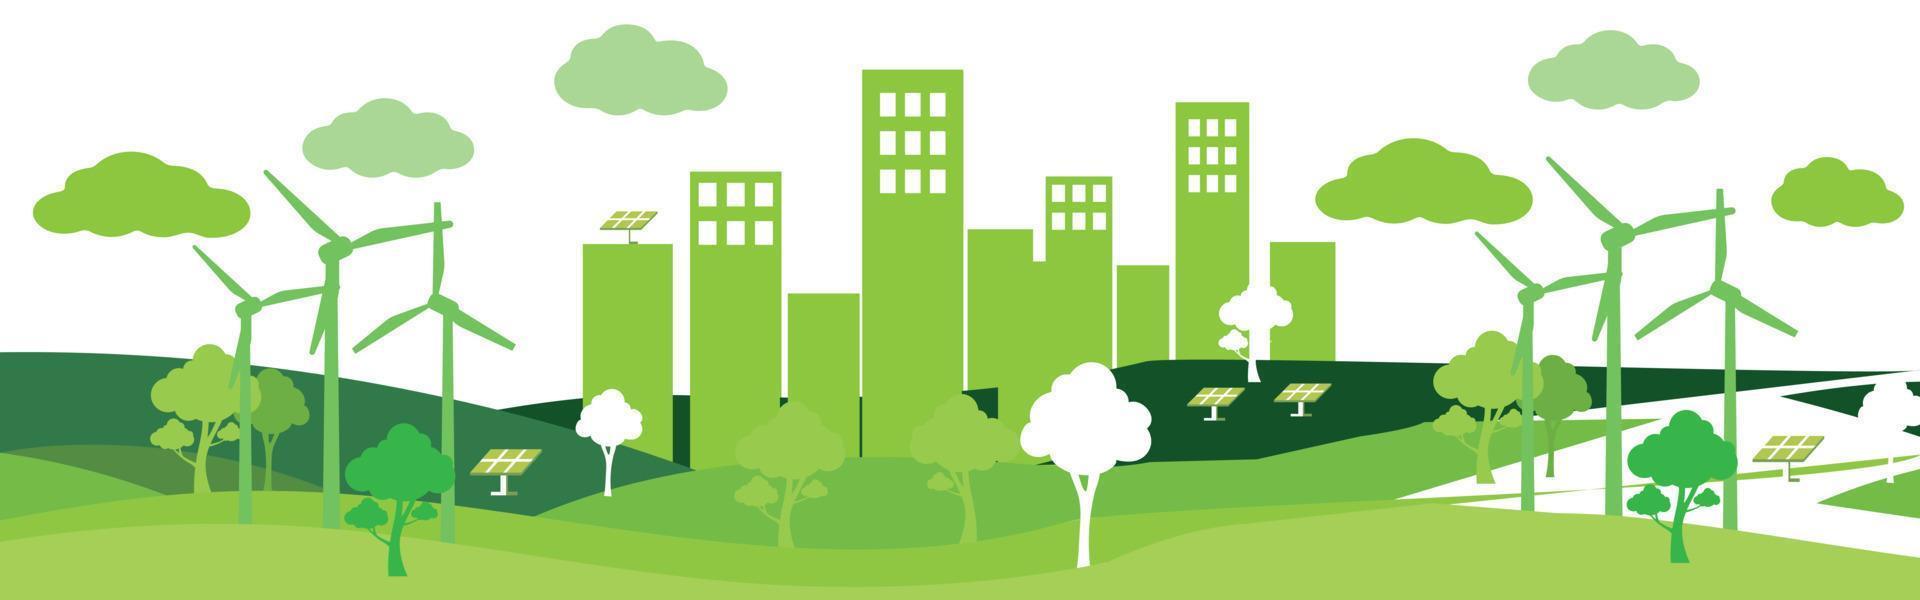 vektor av natur, ekologi, organisk, miljö banners. affischtavla eller webb banner av ren grön miljö med grunge stil